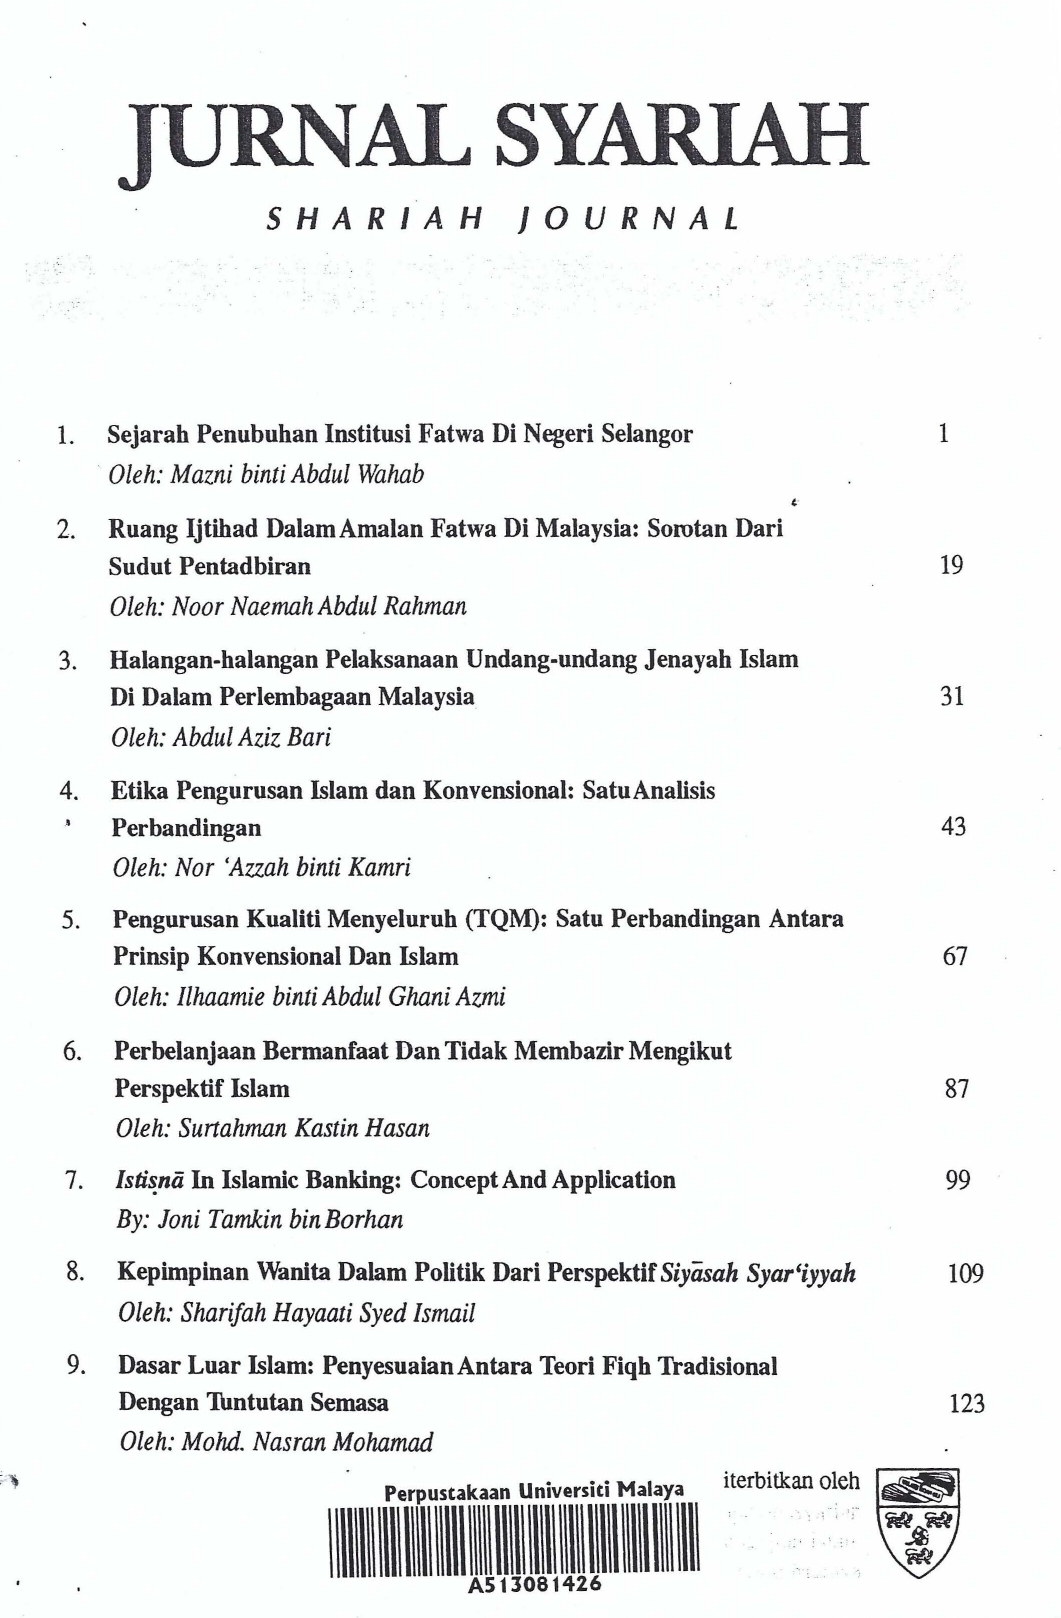 Halangan Halangan Pelaksanaan Undang Undang Jenayah Islam Di Dalam Perlembagaan Malaysia Jurnal Syariah